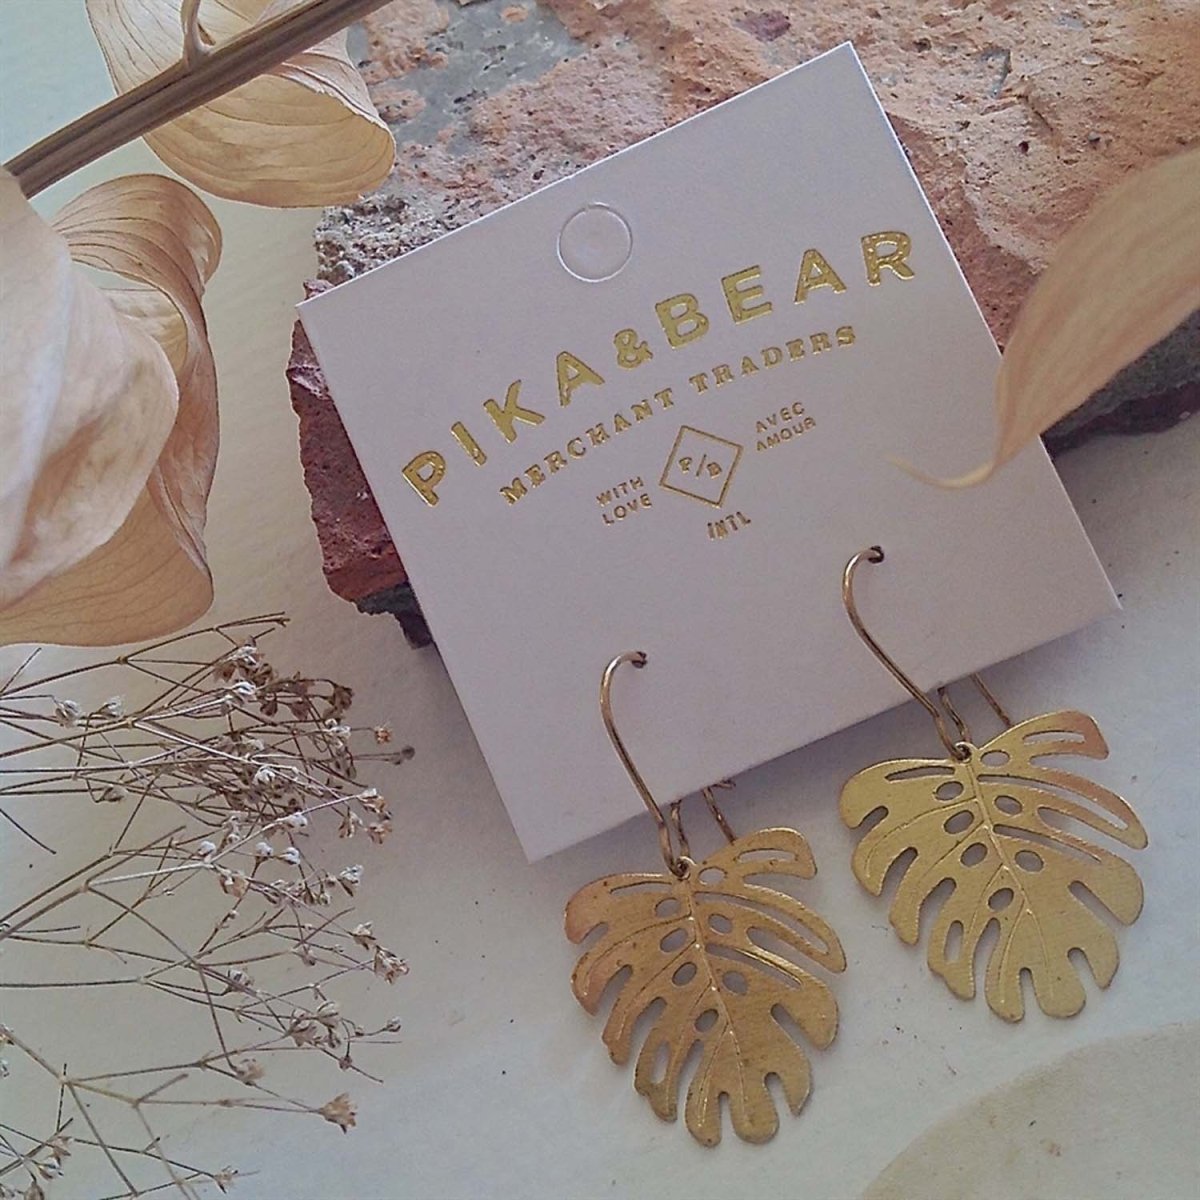 PIKA & BEAR 'KHASI' MONSTERA LEAF ON KIDNEY WIRE EARRINGS - jewellery - PIKA & BEAR